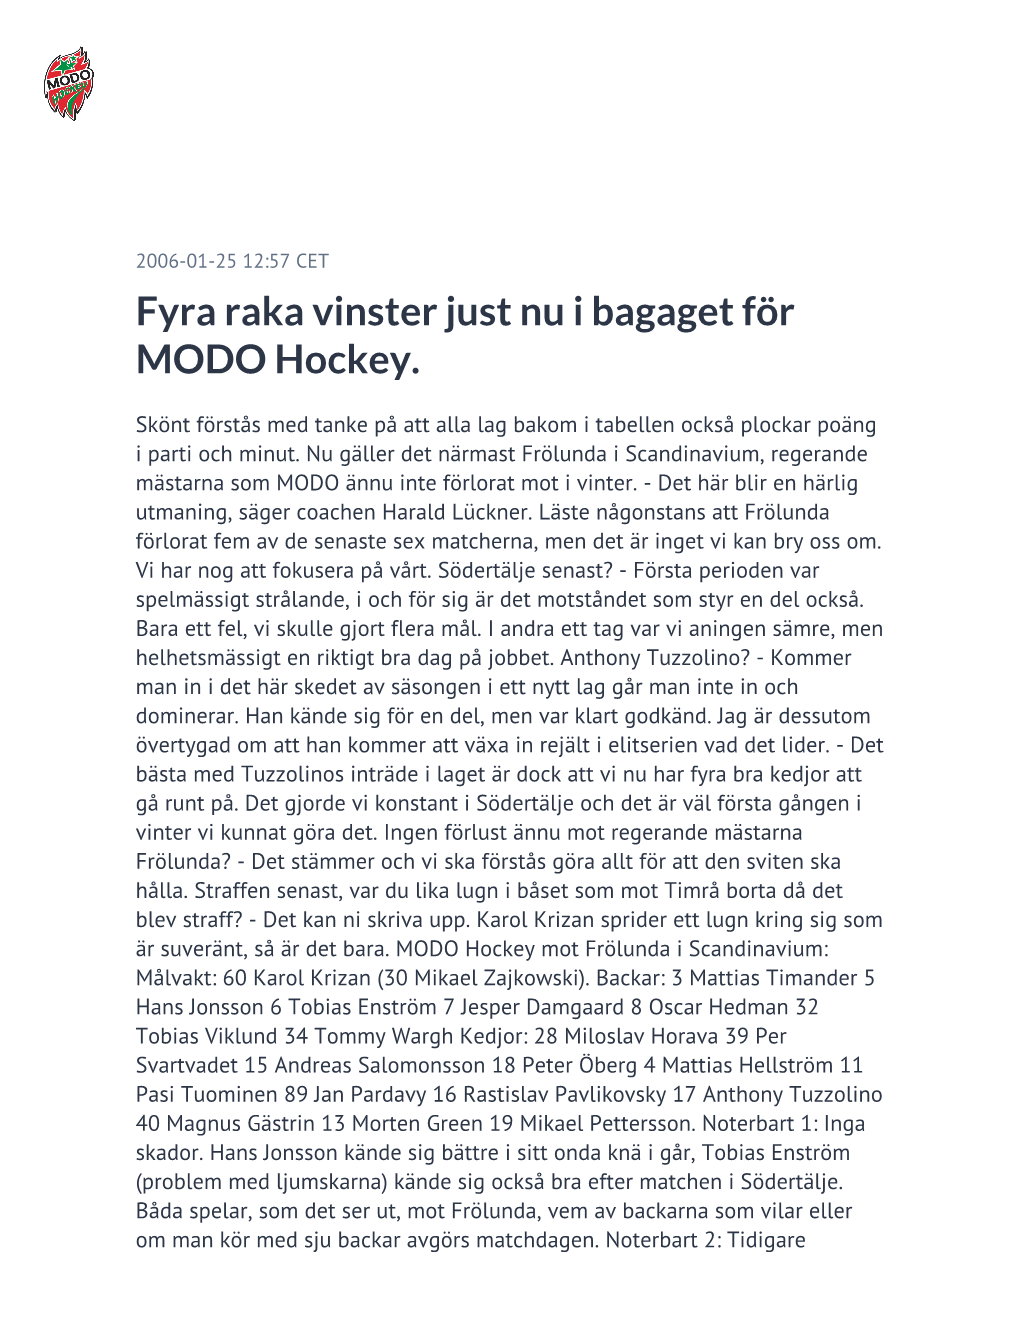 Fyra Raka Vinster Just Nu I Bagaget För MODO Hockey